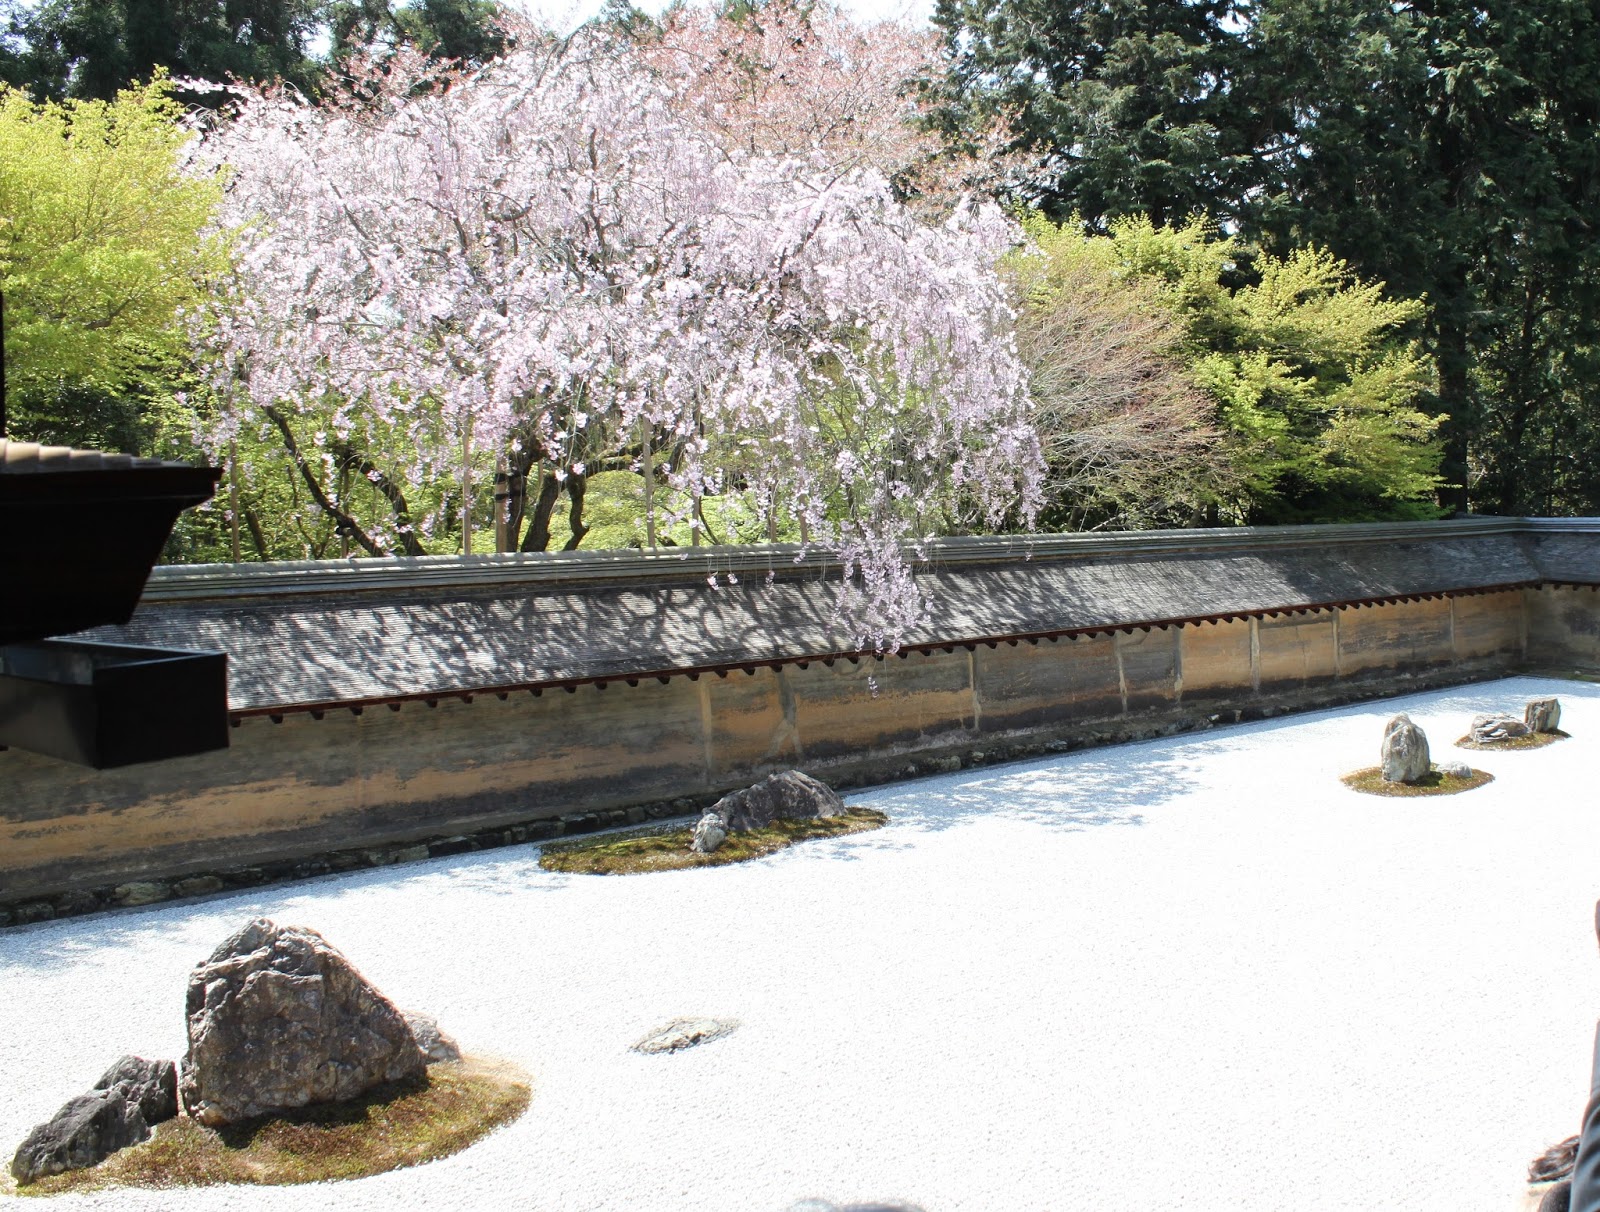 Zajos tolongás a zen kertben - miért érdemes japán stílusban lakberendezni?